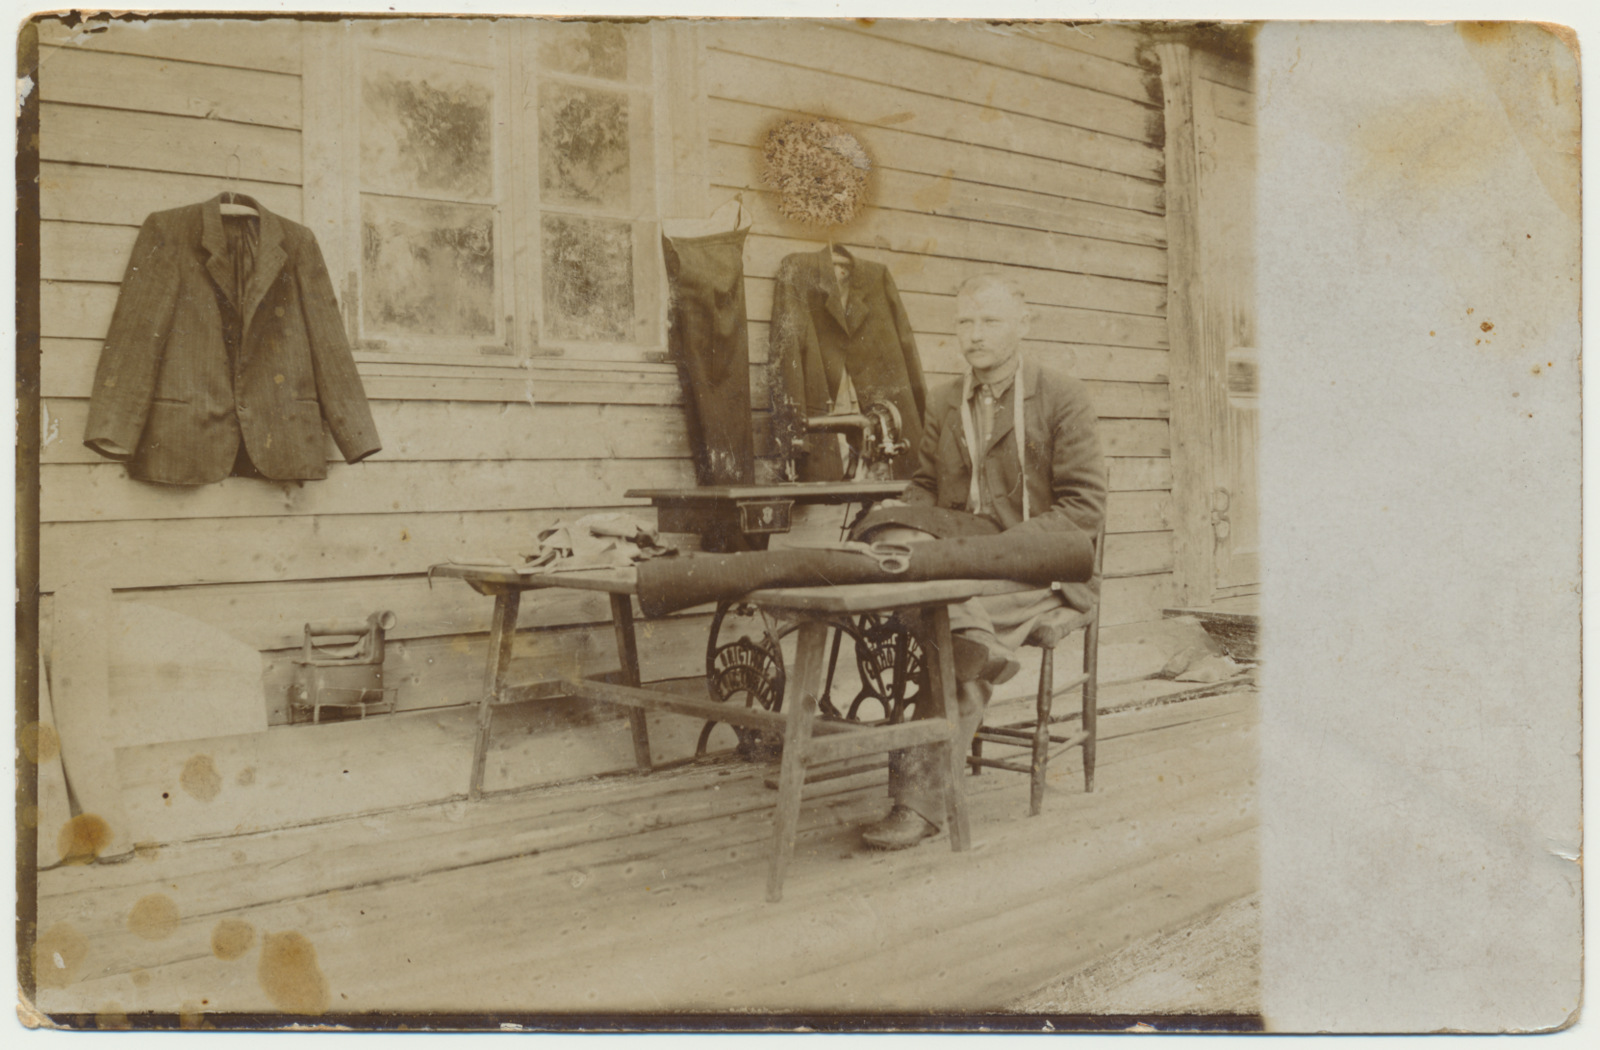 foto, Viljandimaa, Vana-Tänassilma vald, Lellepi talu, rätsep J. Lellep, u 1920